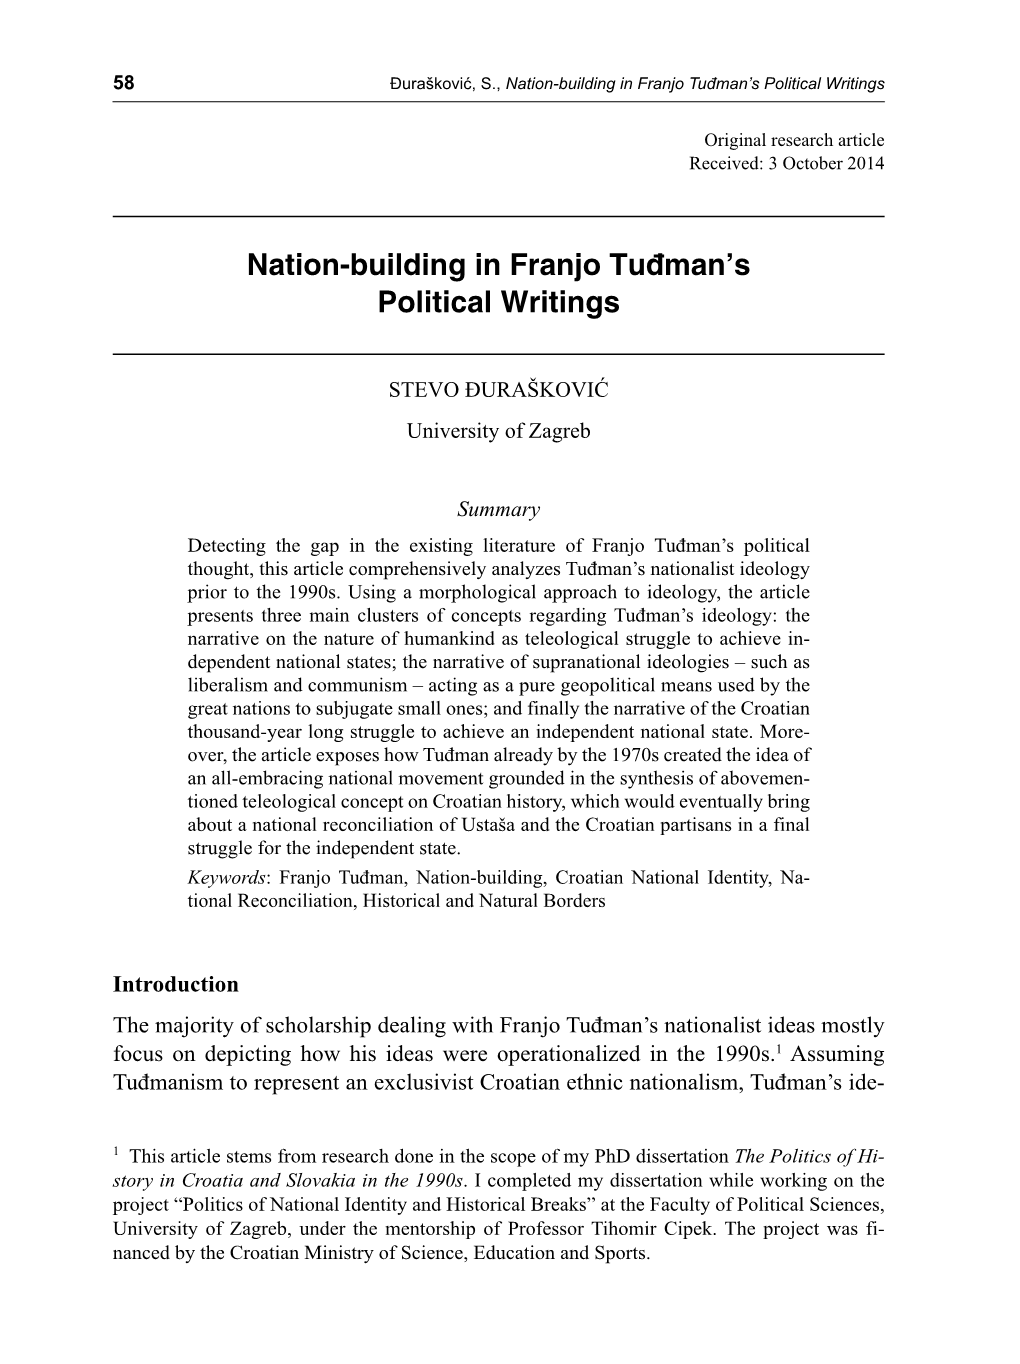 Nation-Building in Franjo Tuđman's Political Writings